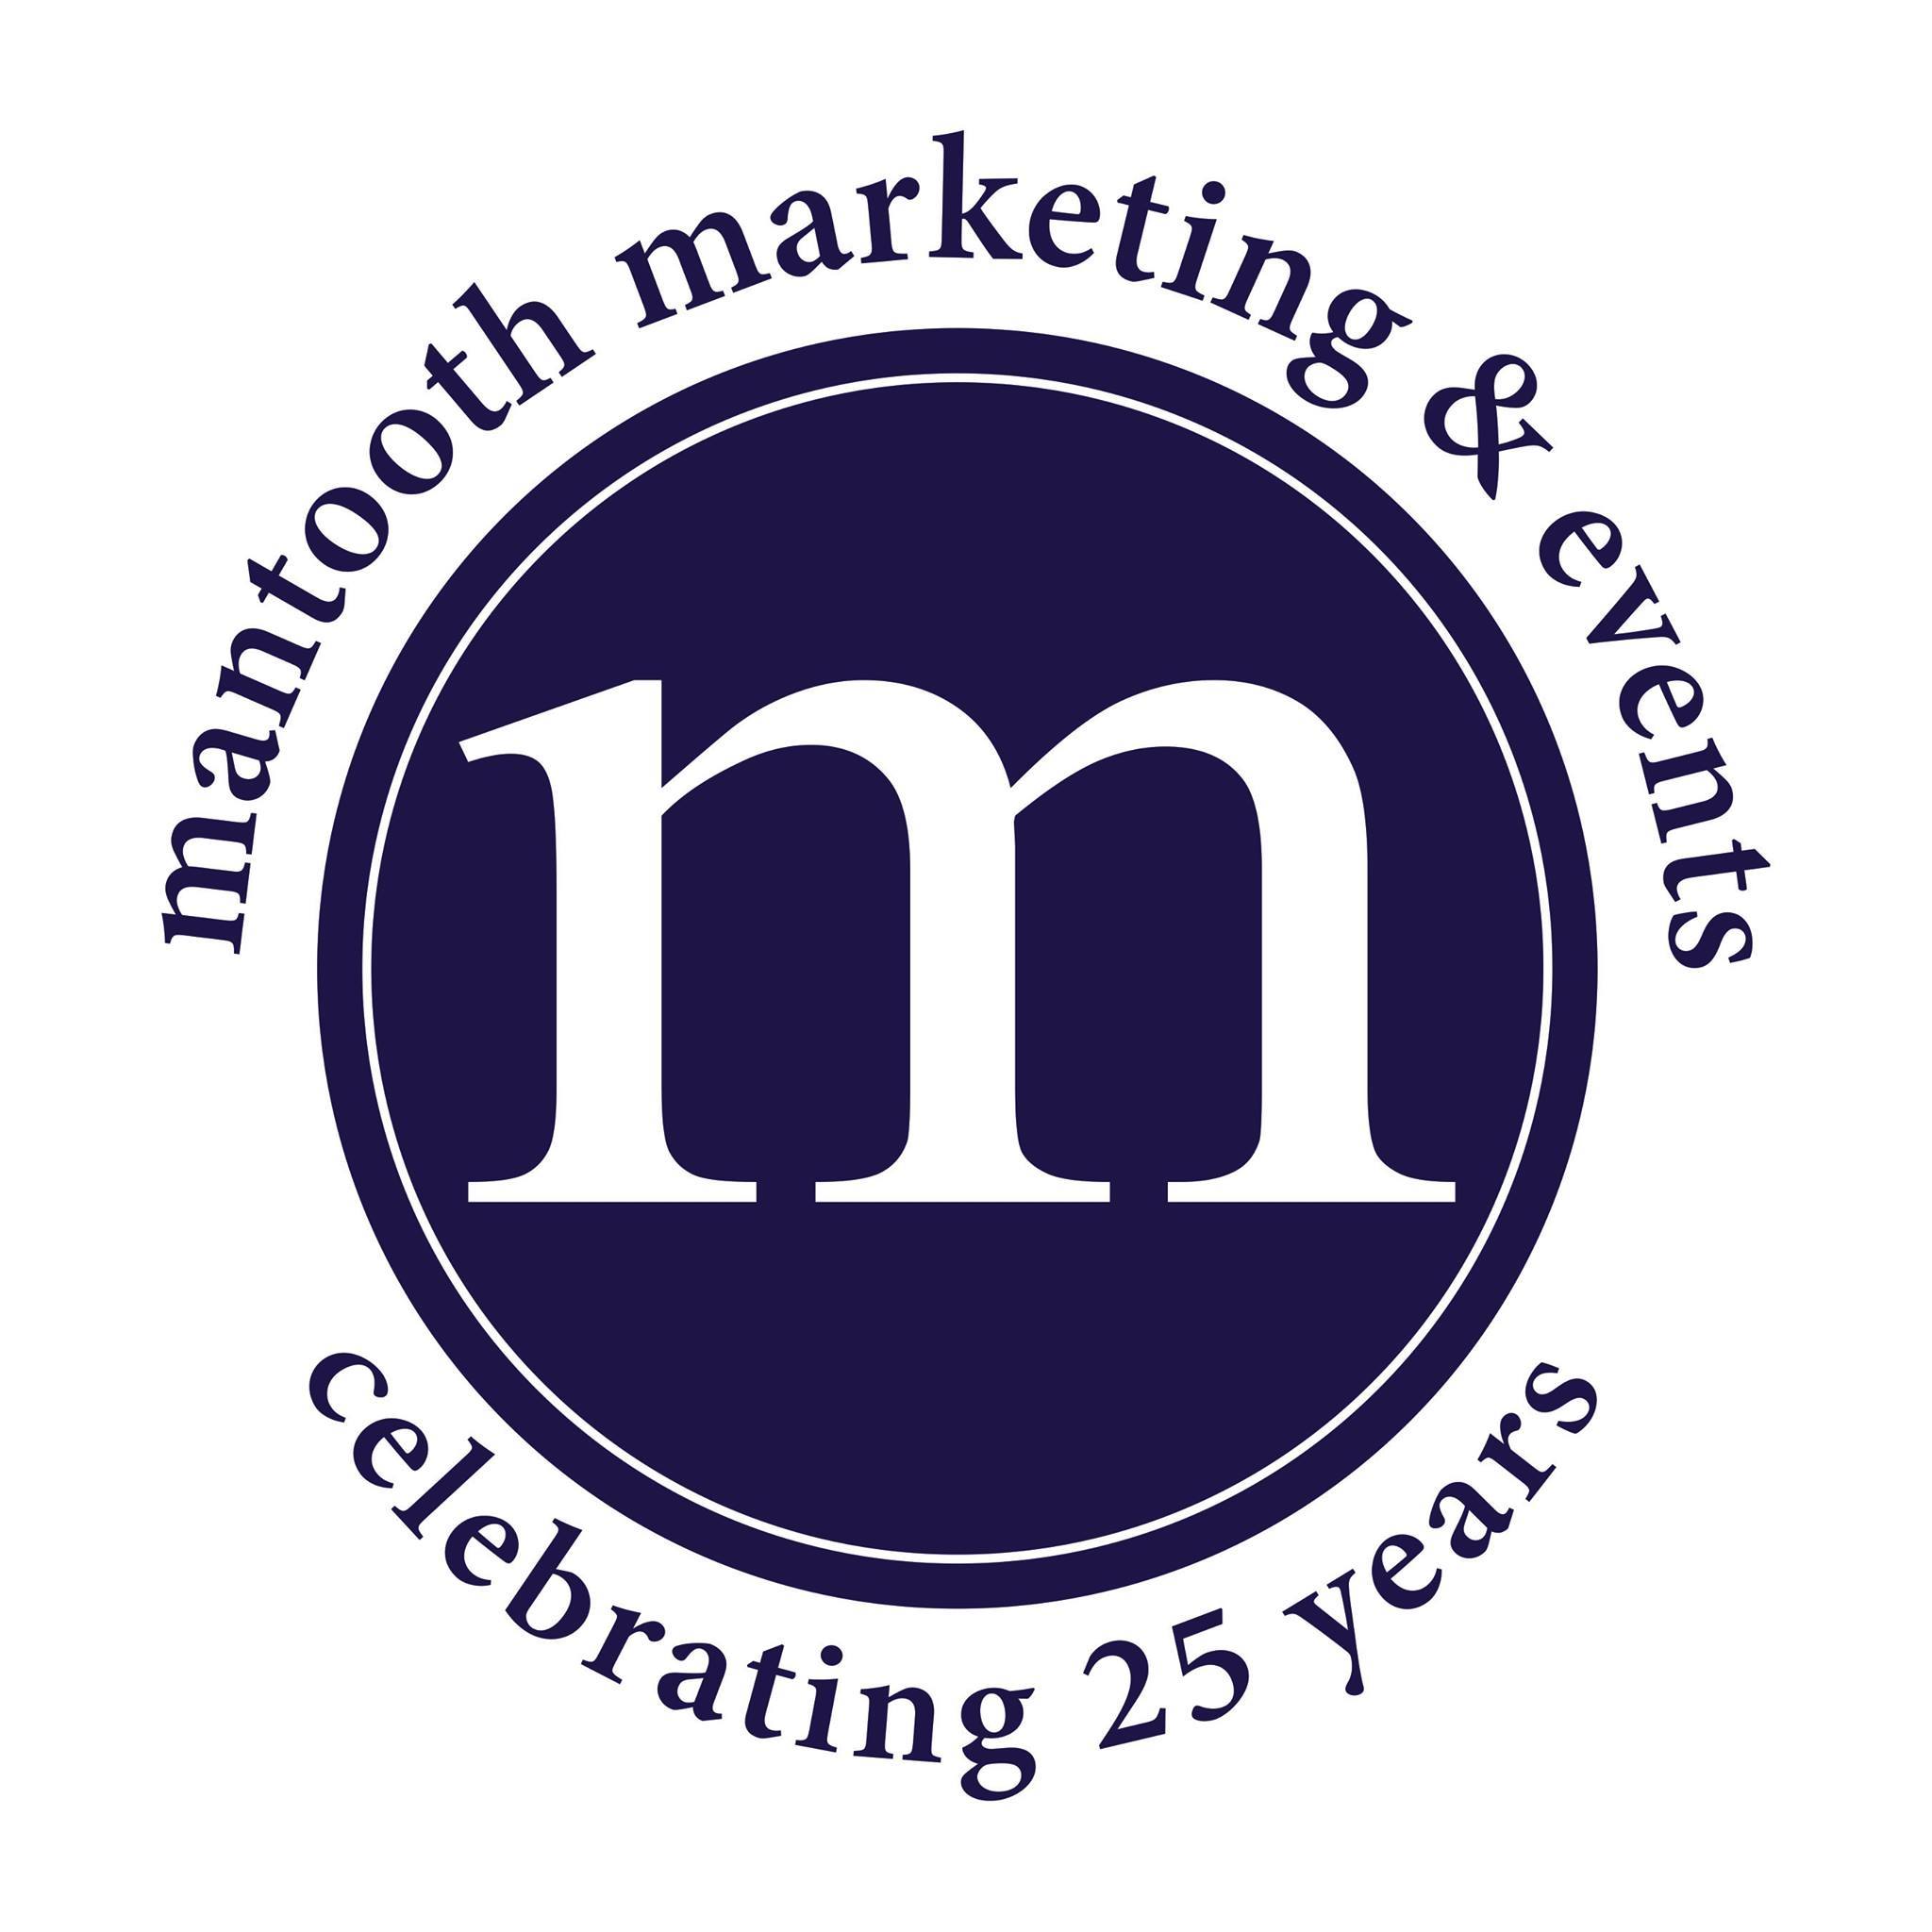 Company logo of Mantooth Marketing & Events Company